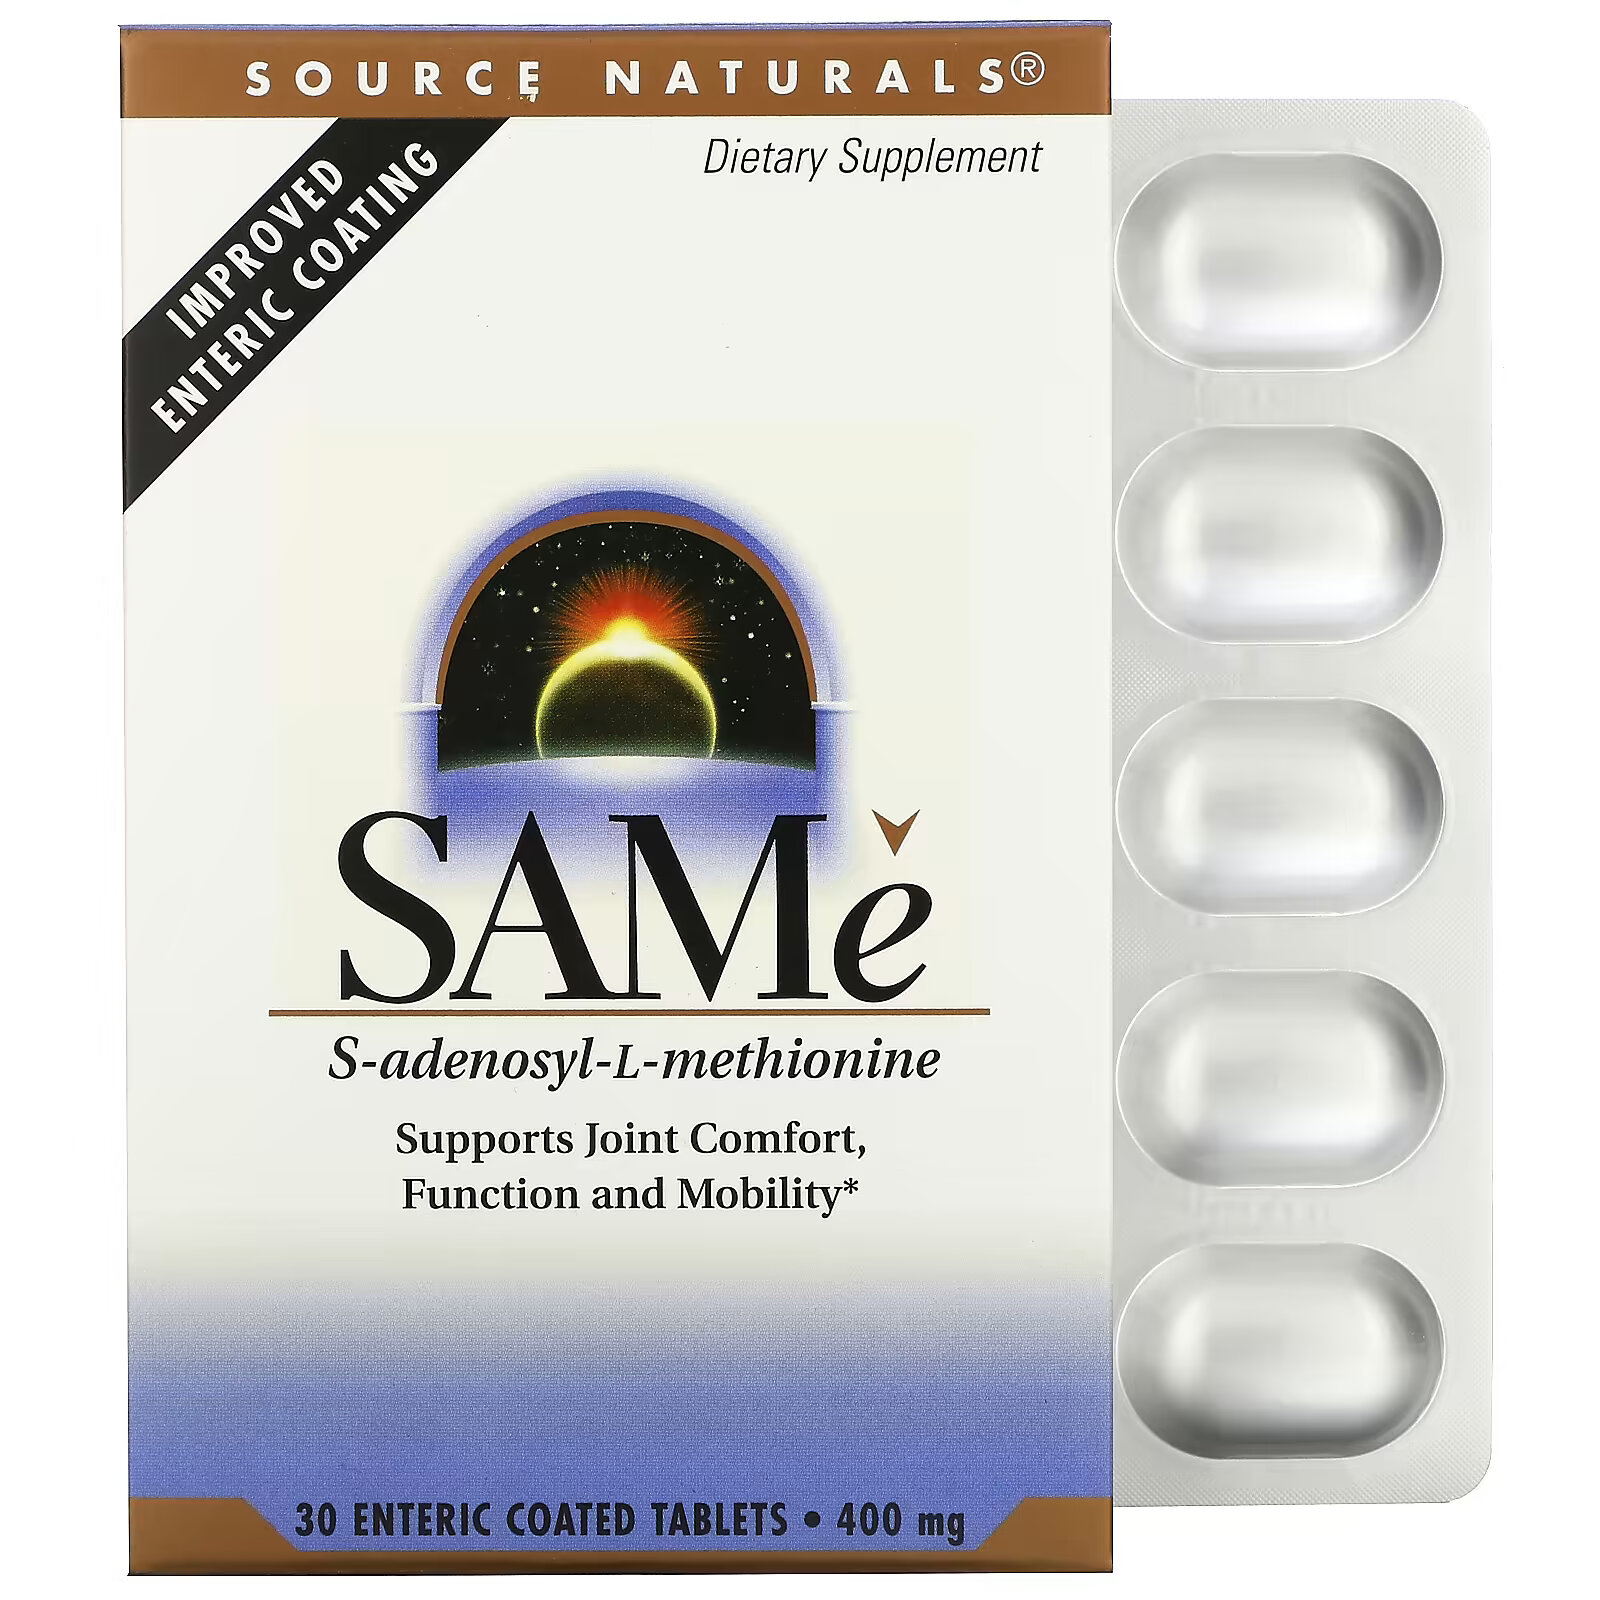 Source Naturals SAMe (дисульфат тозилат) 400 мг, 30 таблеток покрытых кишечнорастворимой оболочкой natural factors same дисульфат тозилат 200 мг 60 таблеток с медленным высвобождением